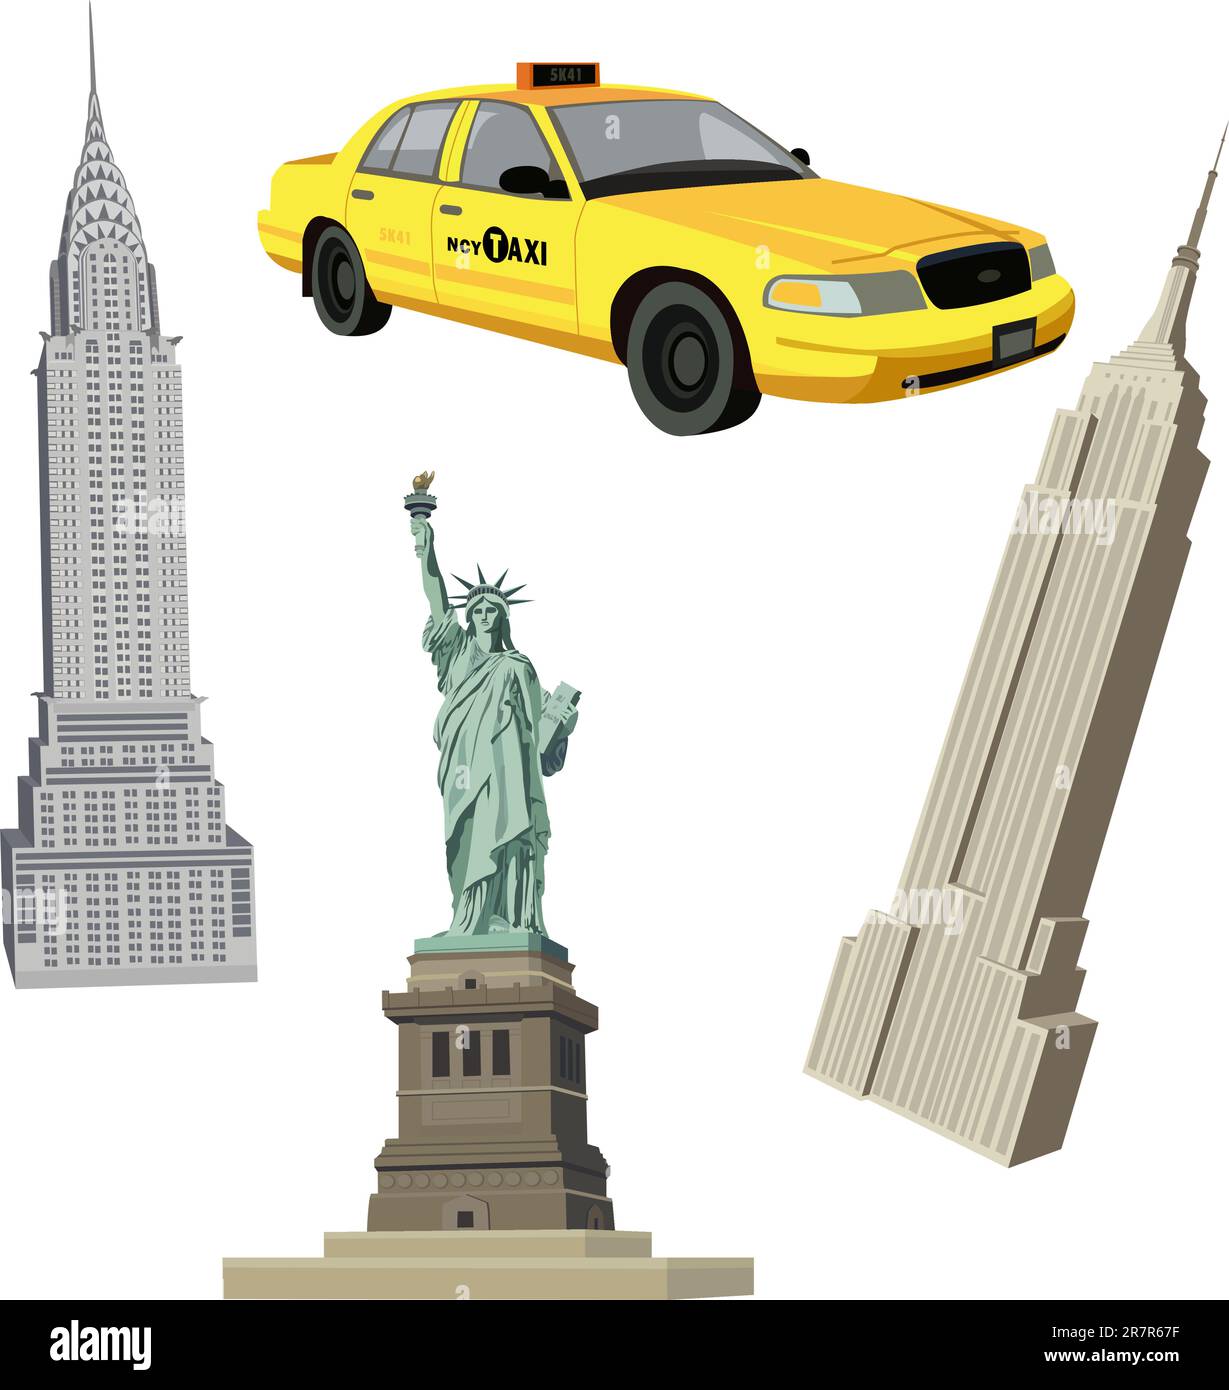 Illustrazione con Statua della libertà, Chrysler, Empire State Buildings e un taxi di New York Illustrazione Vettoriale